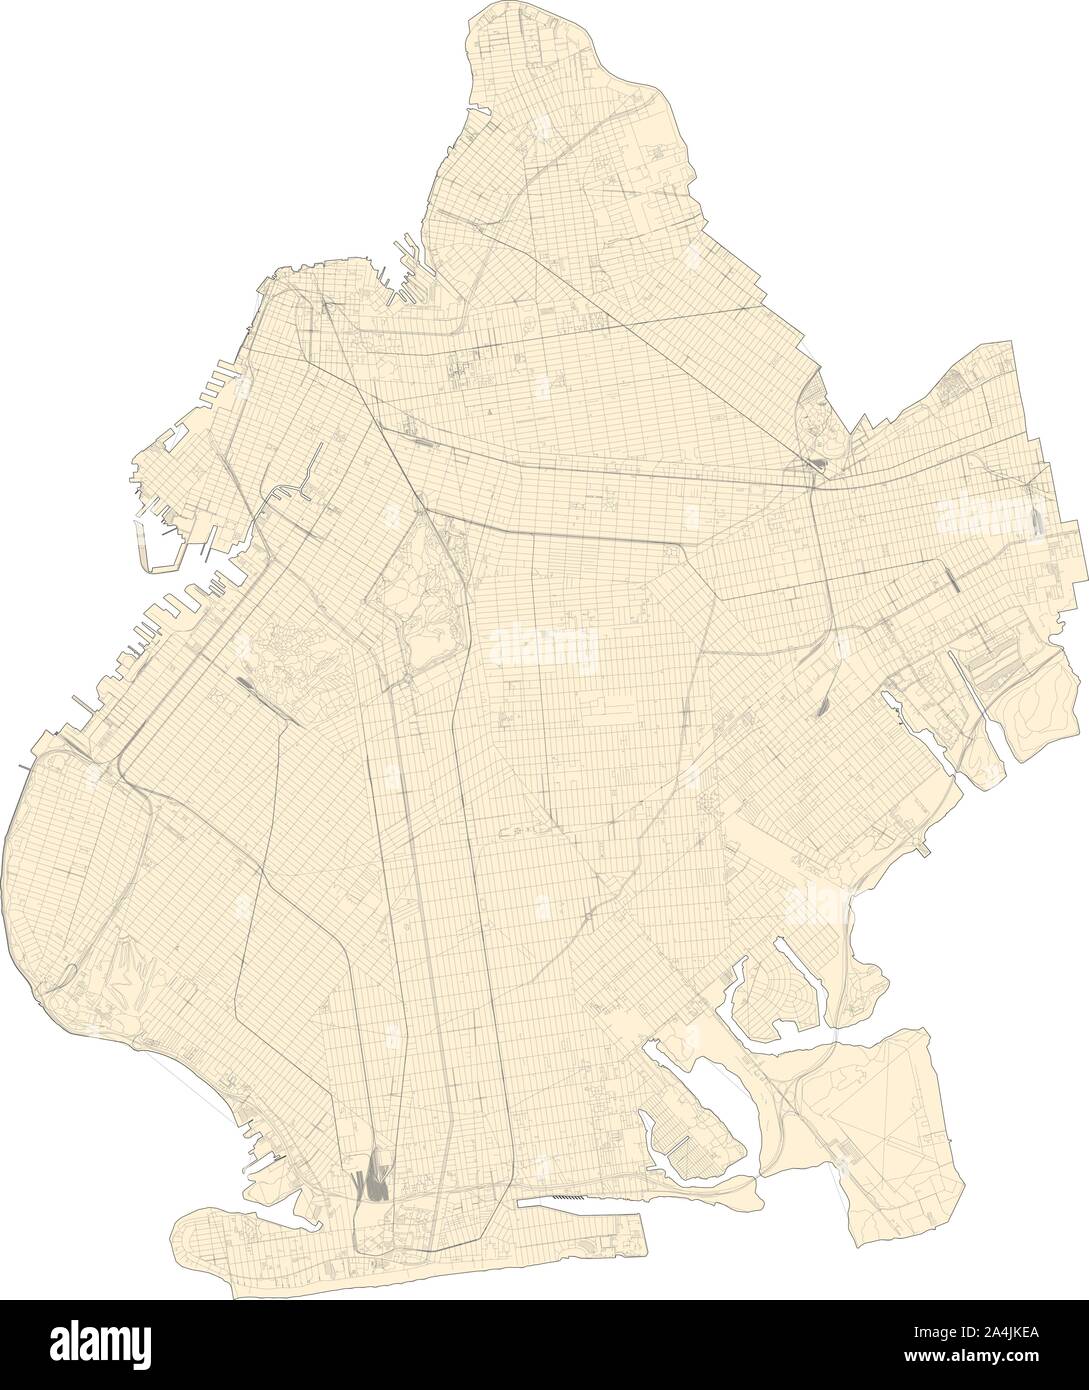 Carte Satellite de la ville de New York, Brooklyn, USA. La carte des routes, des rocades et autoroutes, rivières, lignes de chemin de fer. Carte de transport Illustration de Vecteur